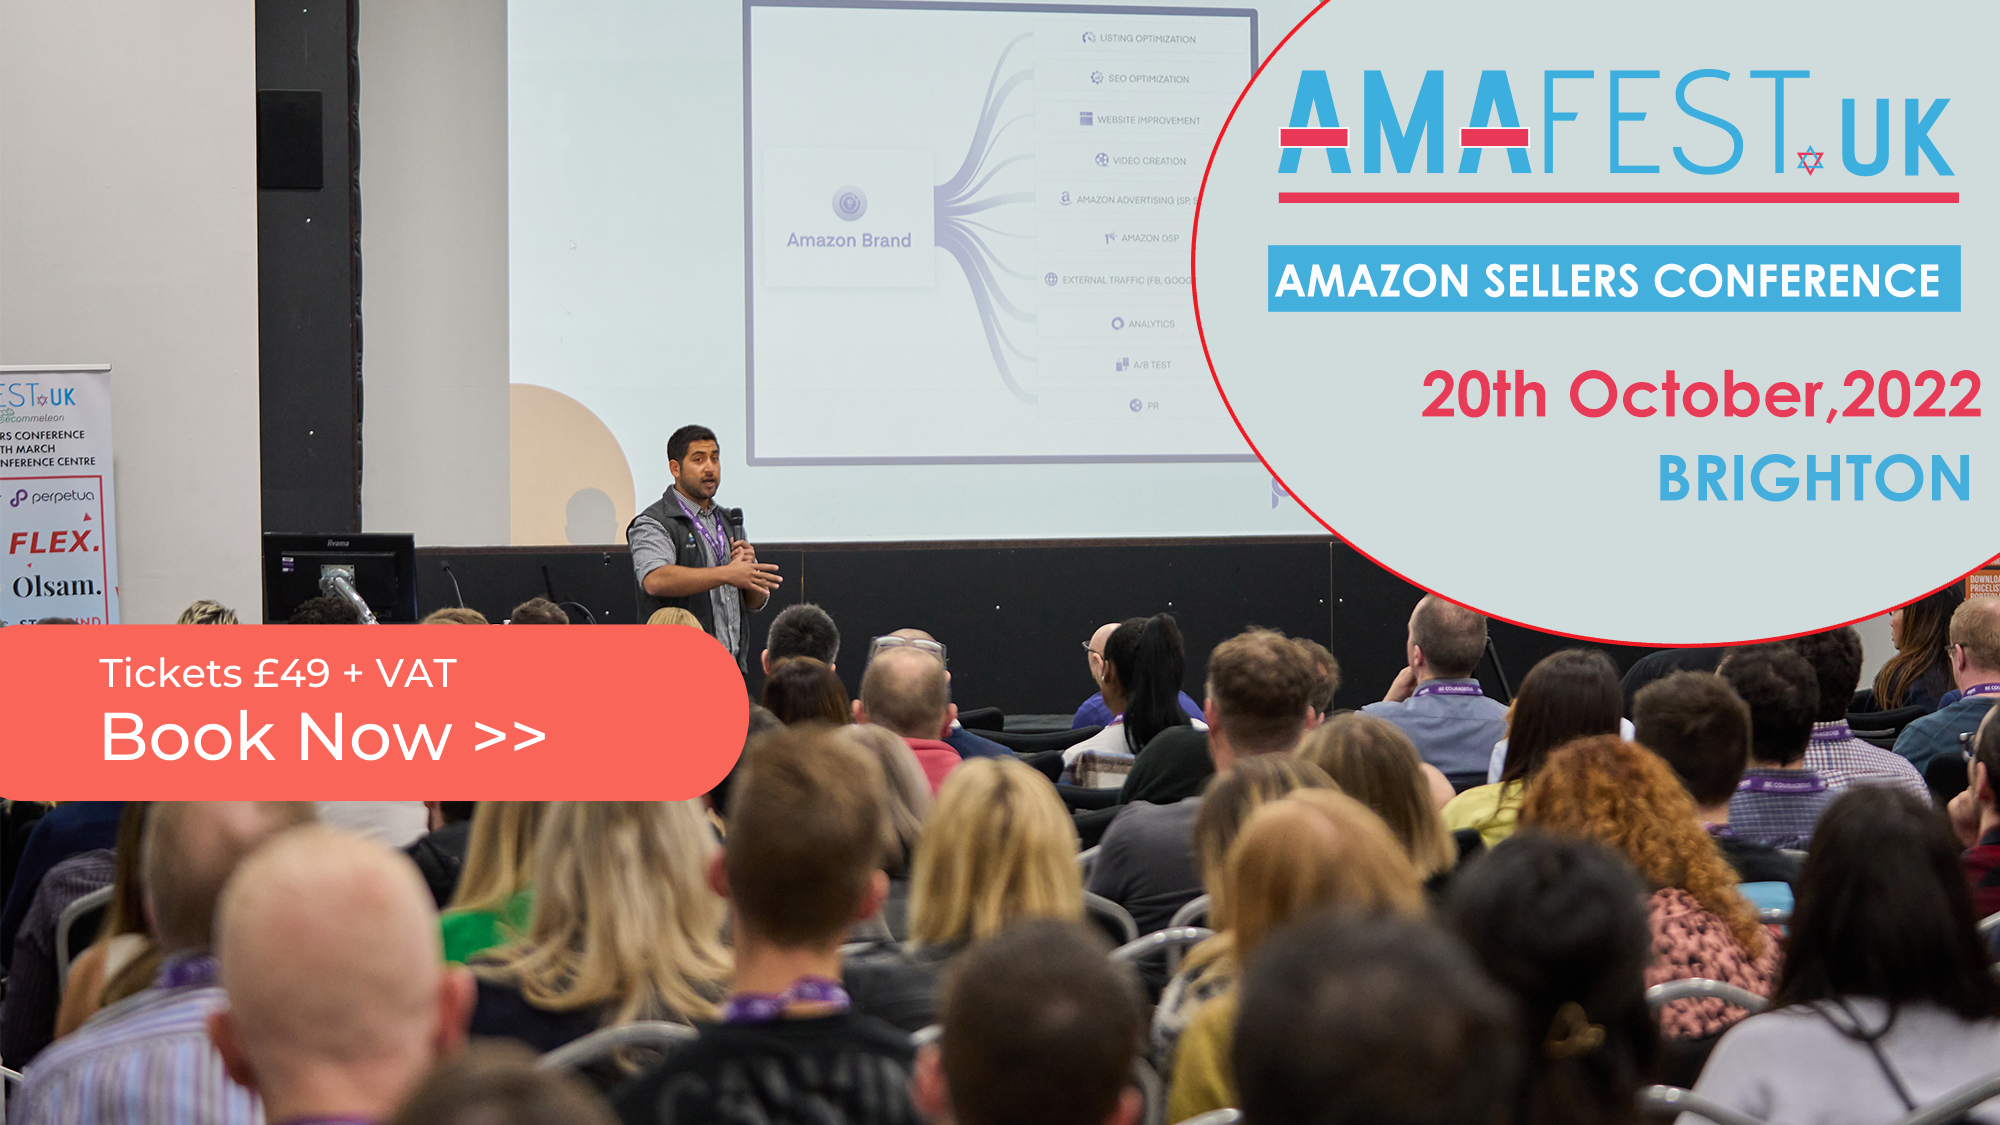 Amazon Conference - AmafestUK